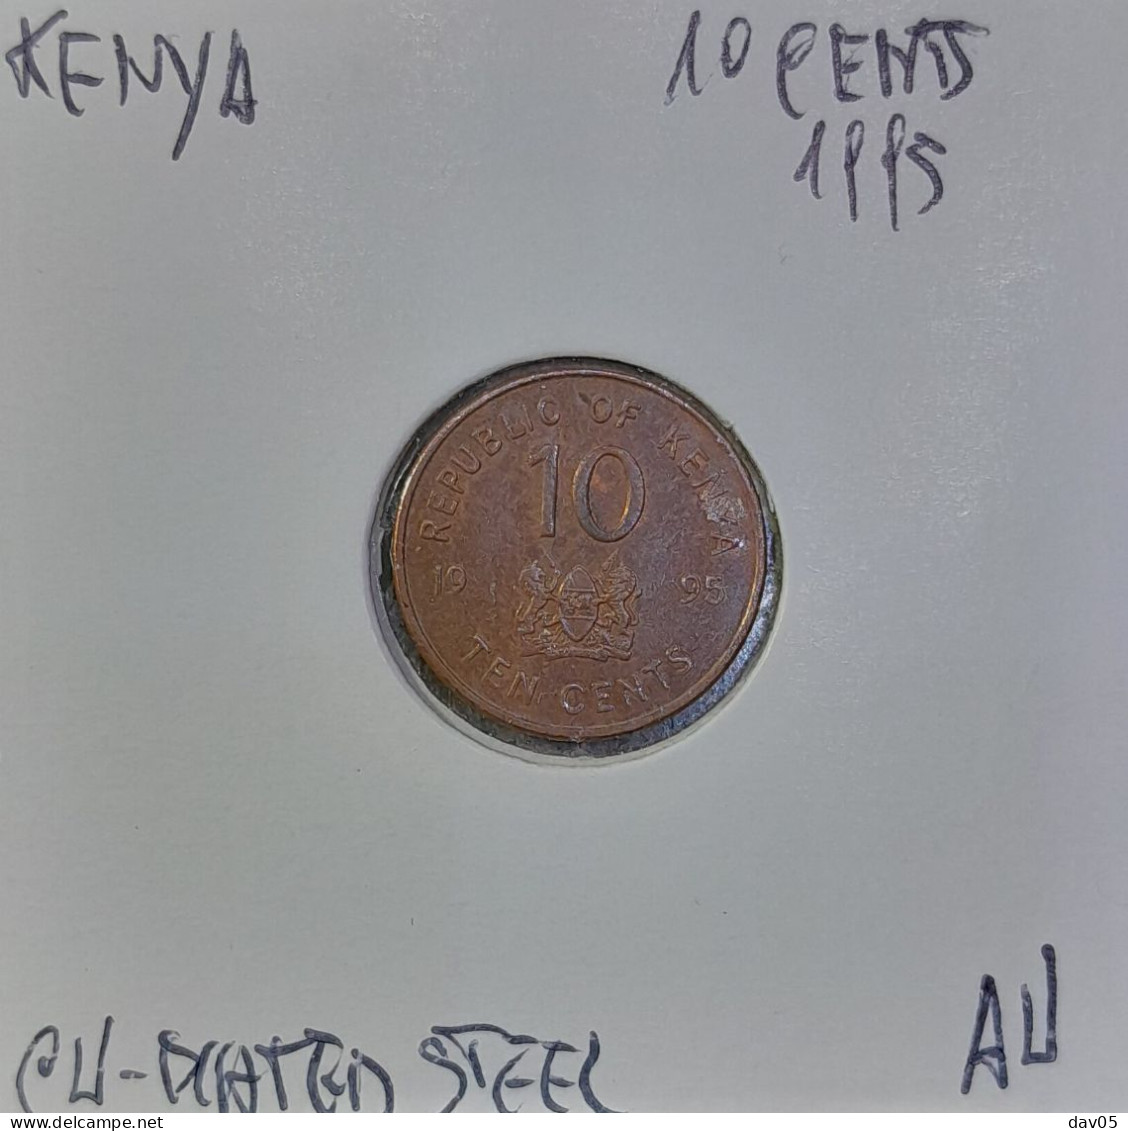 KENYA -10 CENTS 1995 - AU/SUP - Kenia